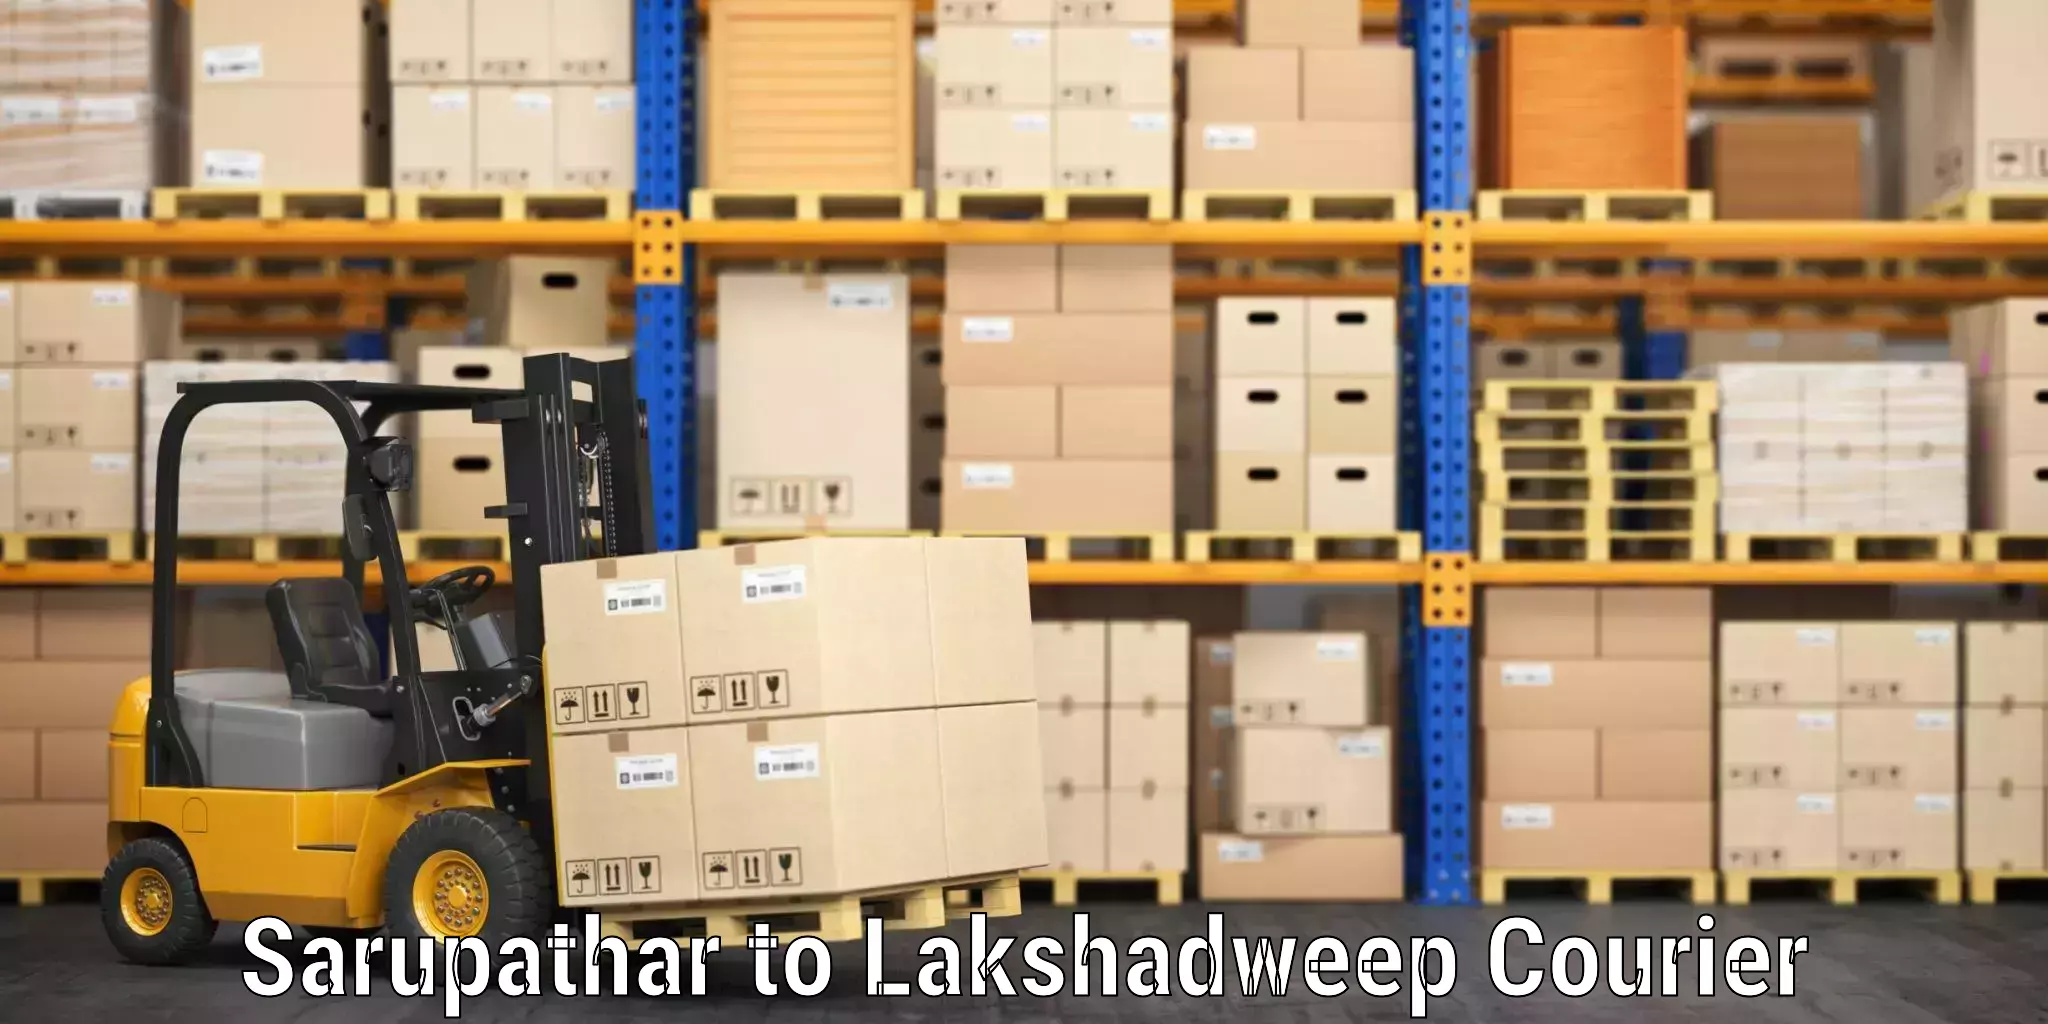 Luggage shipping rates calculator Sarupathar to Lakshadweep